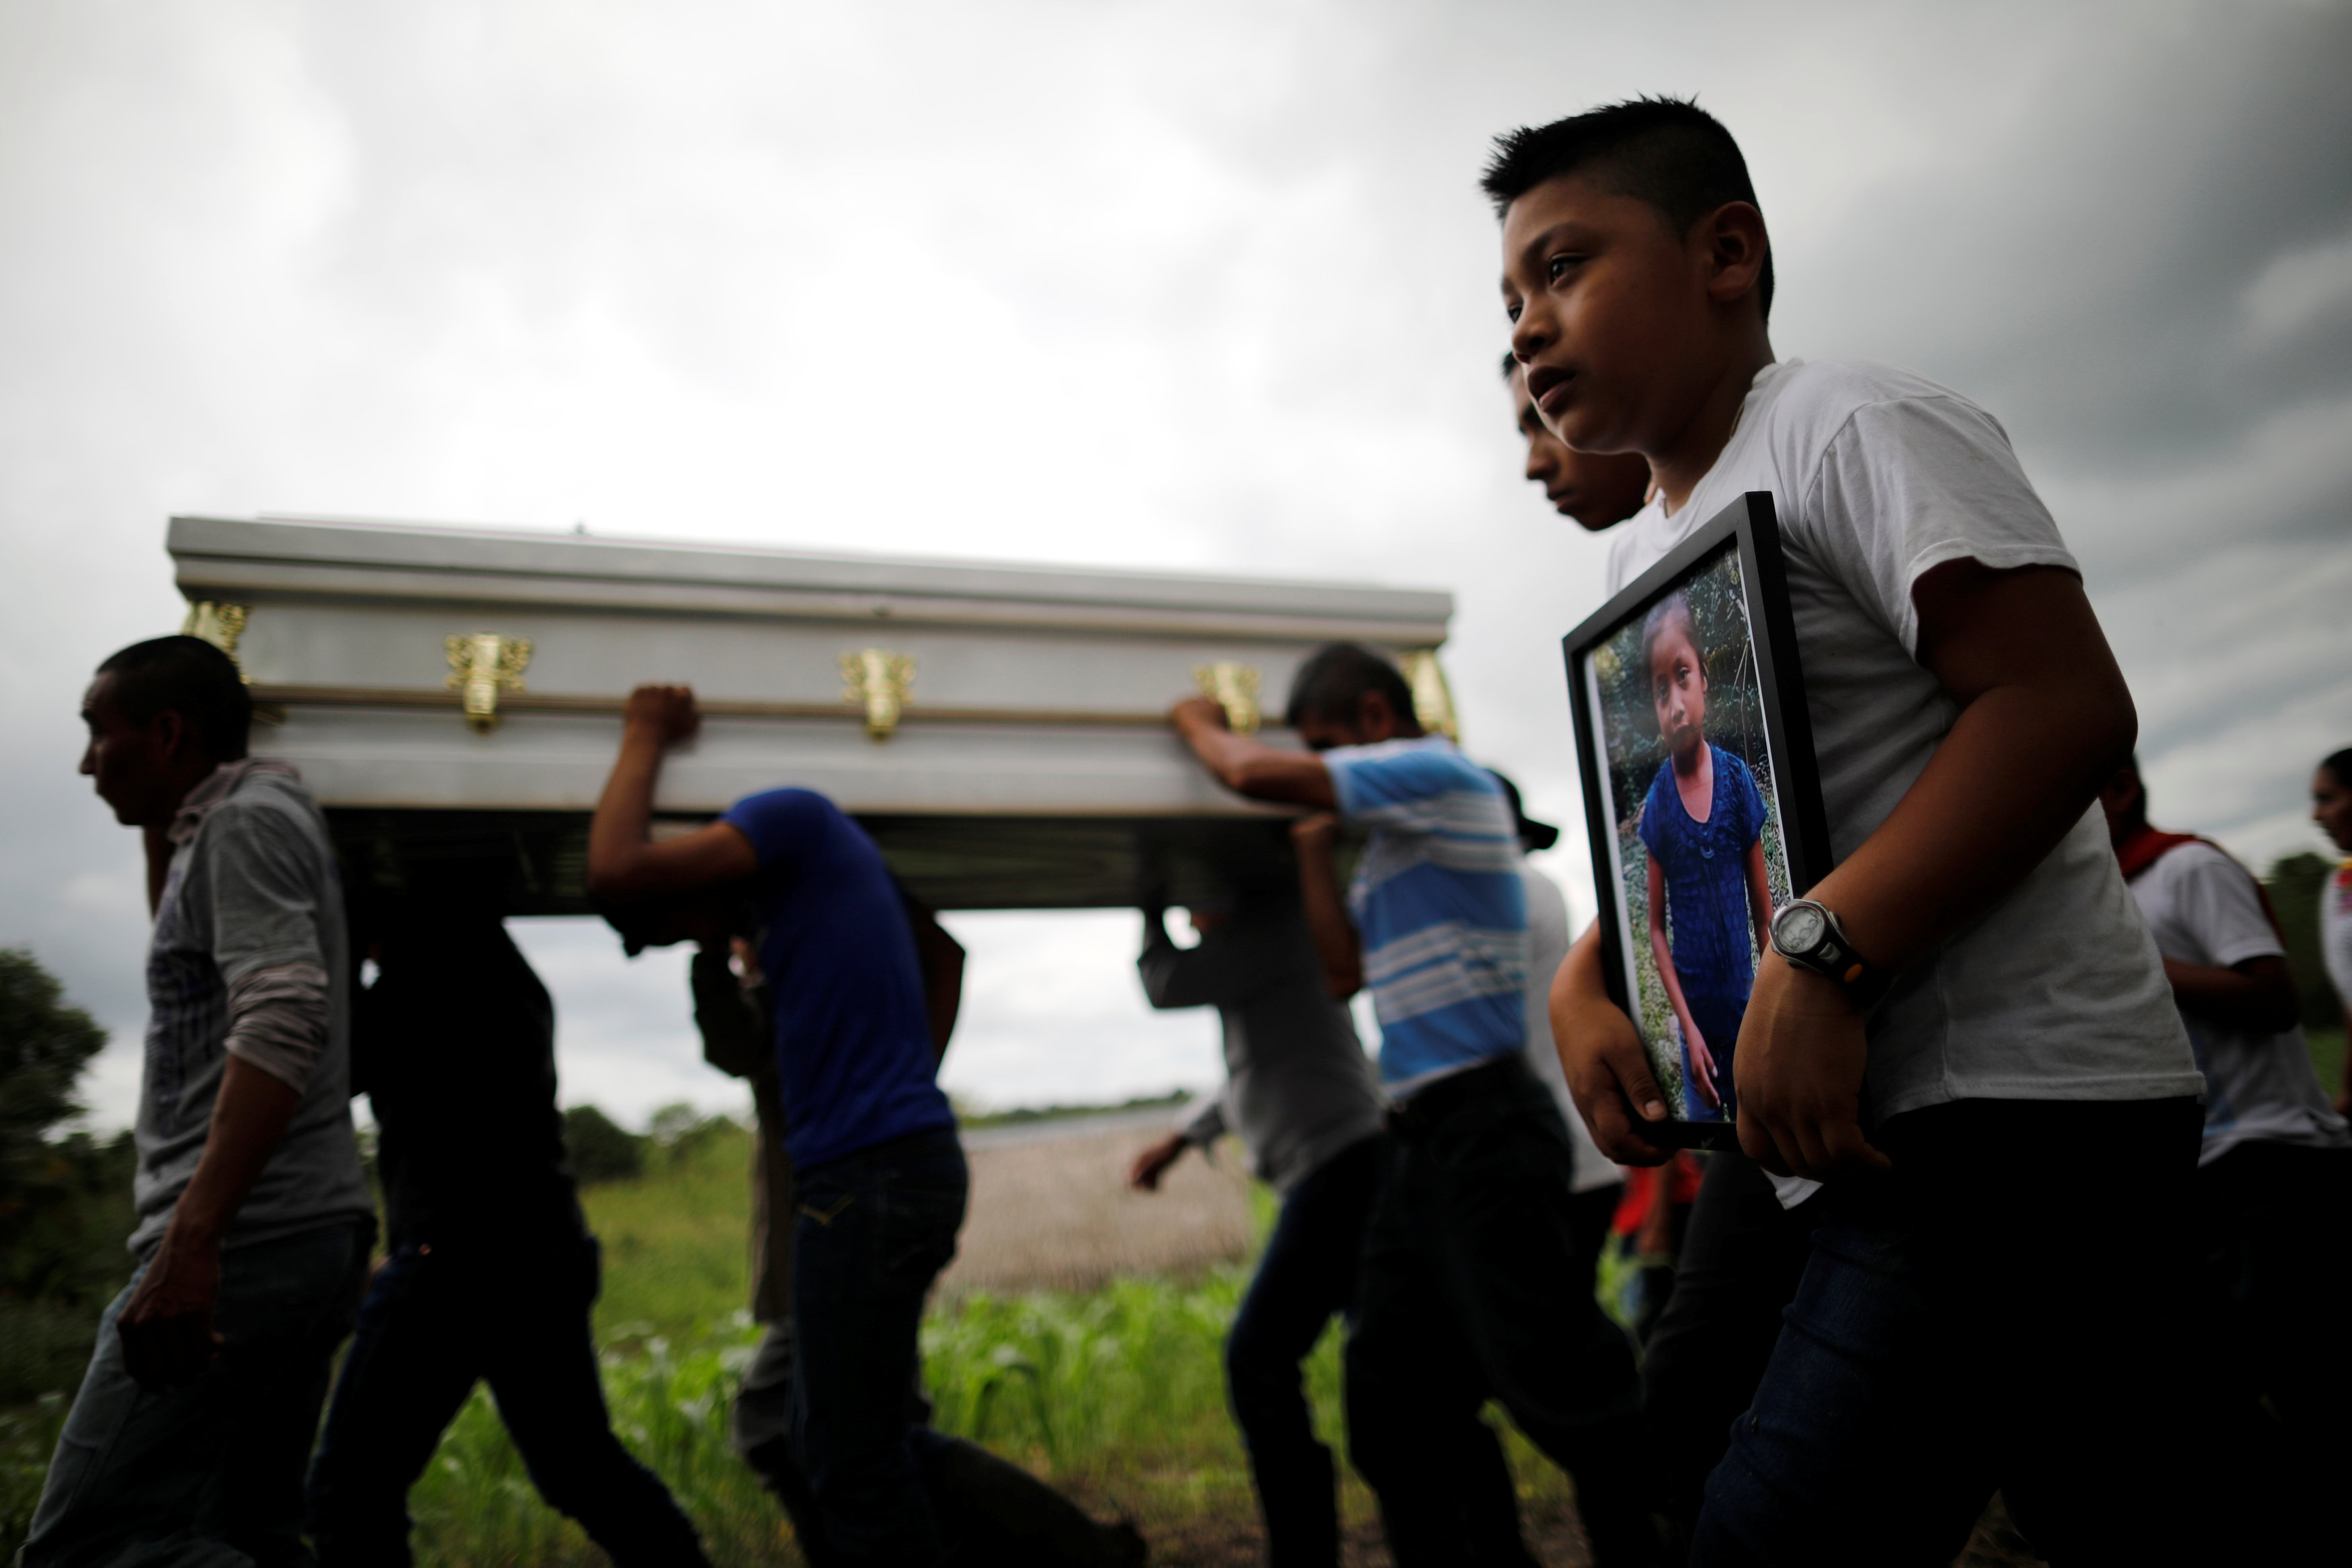 El entierro en Guatemala de Jakelin Caal, de 7 años, quien viajó junto a su padre escapando de la violencia y la pobreza de su país (Reuters)